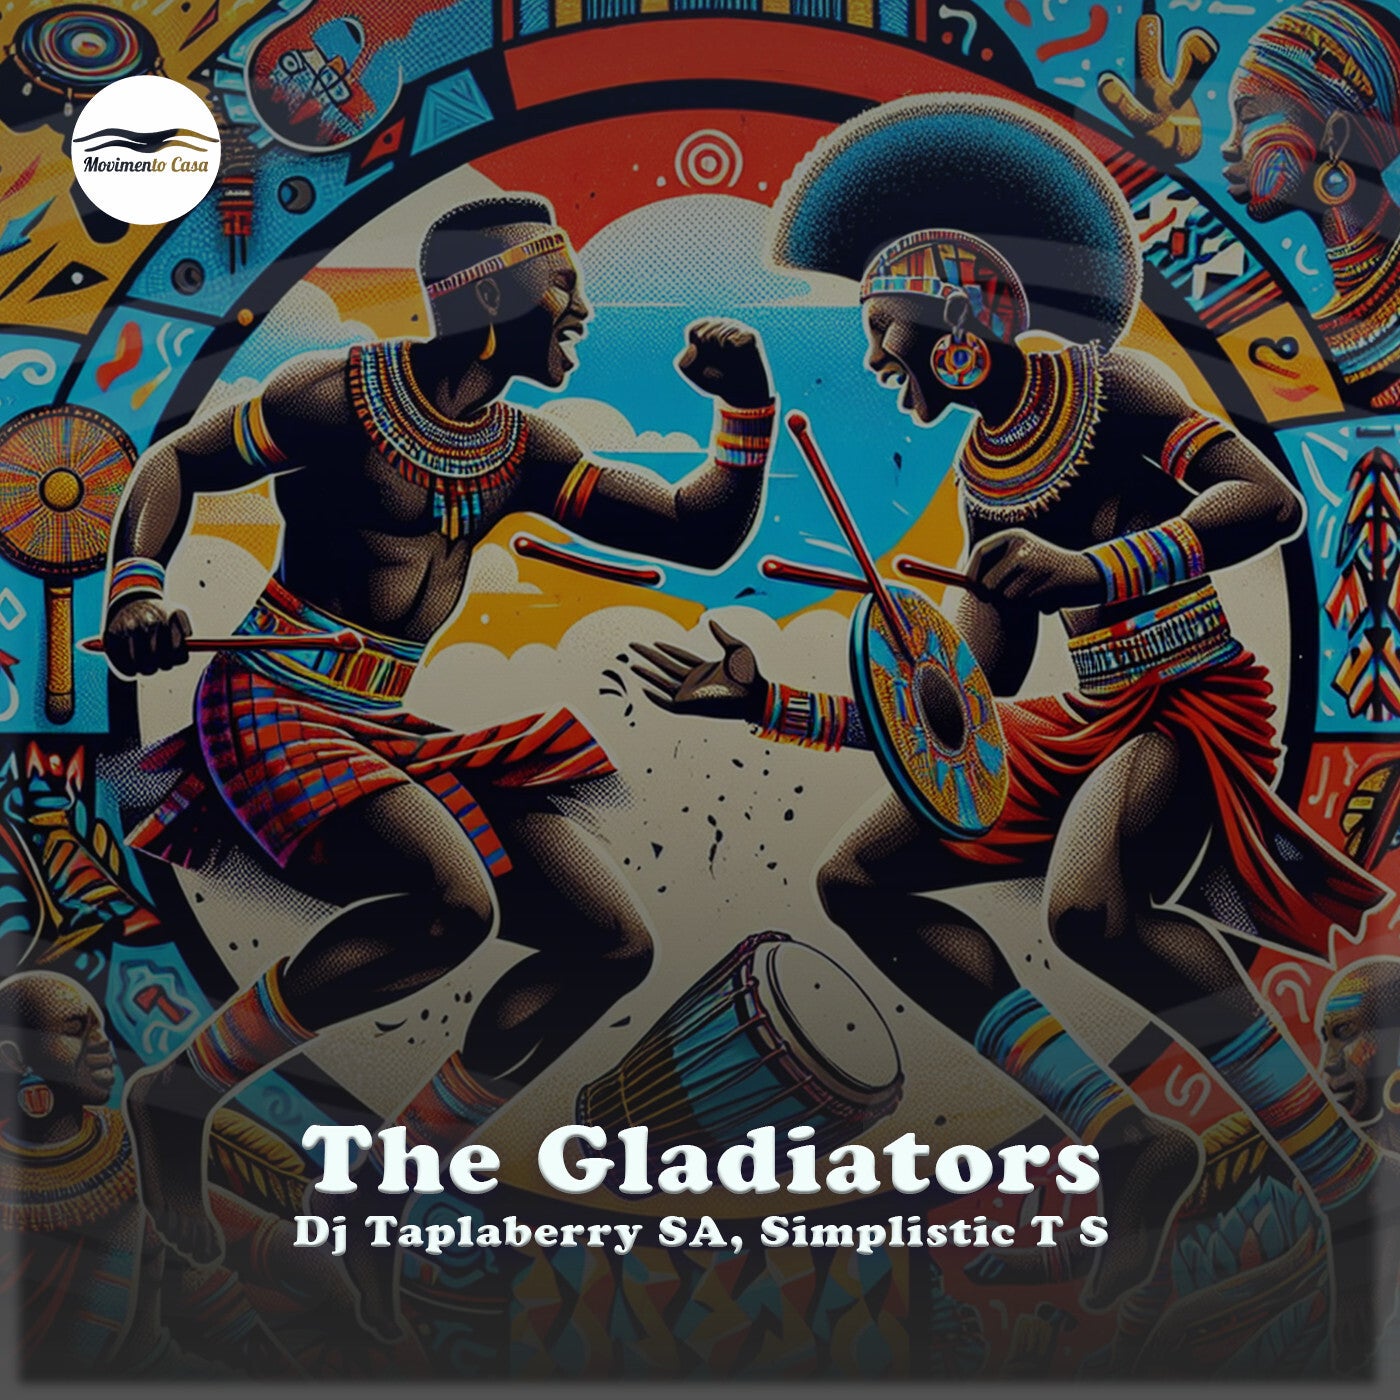 The Gladiators